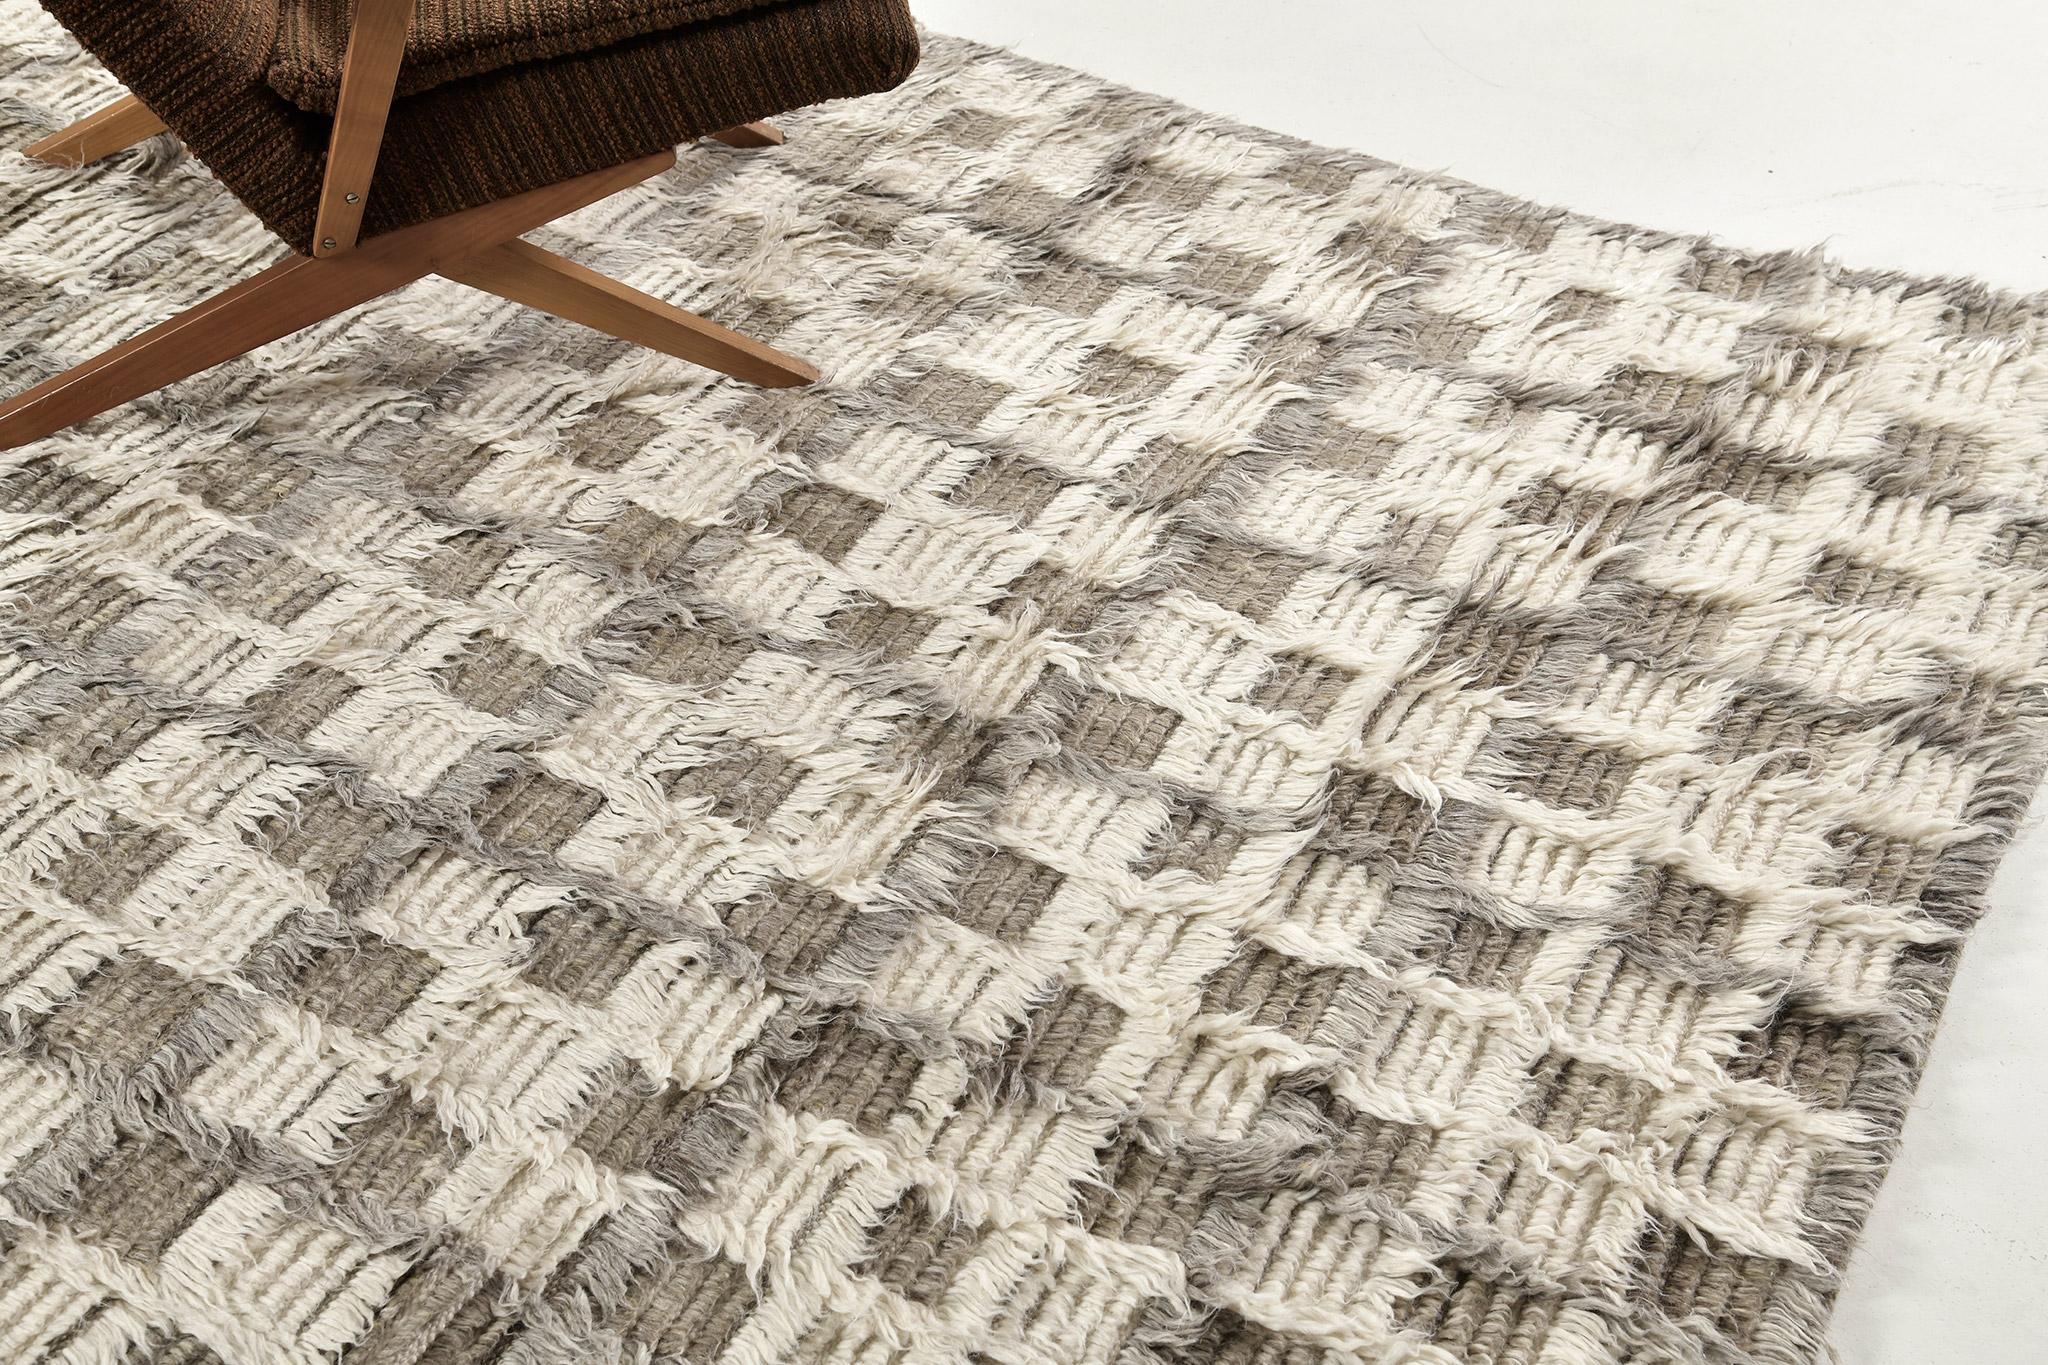 Der Teppich Miha zeichnet sich durch ein Schachbrettmotiv aus, das in einem Mehrflor-Design mit verschobenen, tonalen Gitterlinien spielt. Dieses Stück ist in Elfenbein mit kühlen und khakifarbenen Grautönen gehalten. 

Die Sahara-Kollektion, eine